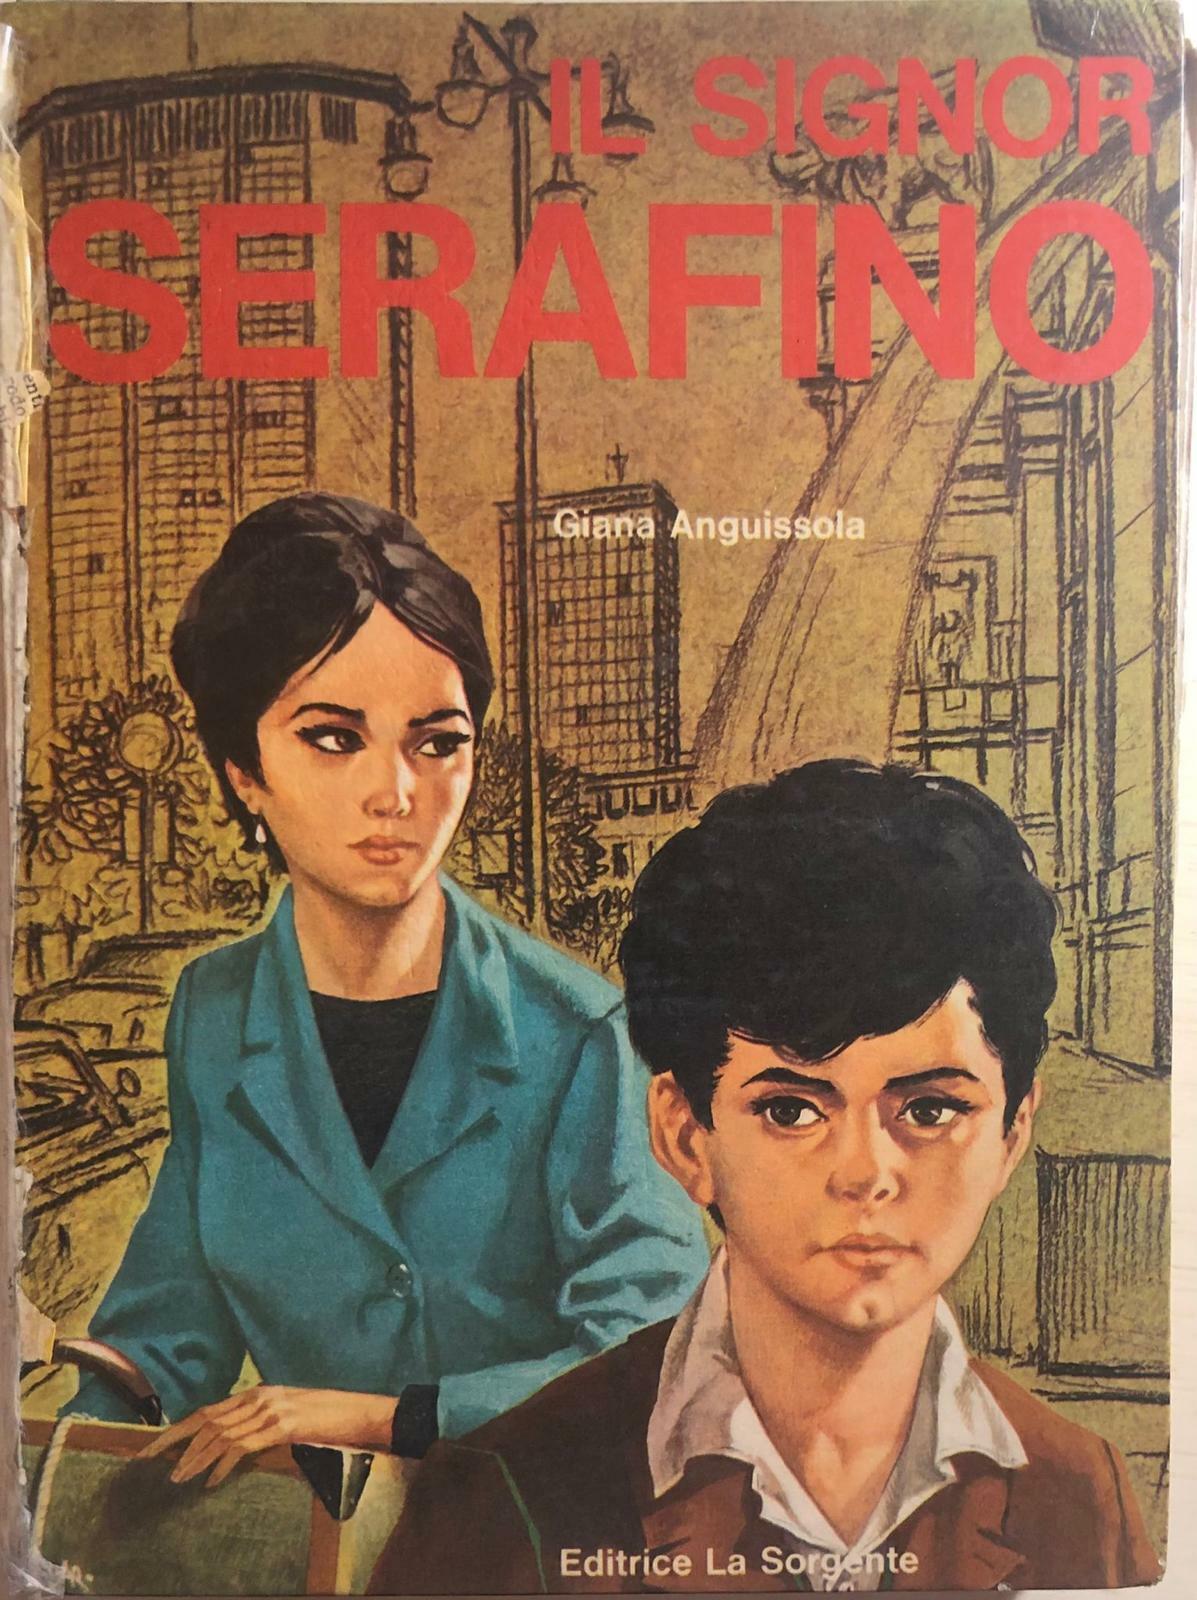 Il Signor Serafino di Giana Anguissola, 1966, Editrice La Sorgente